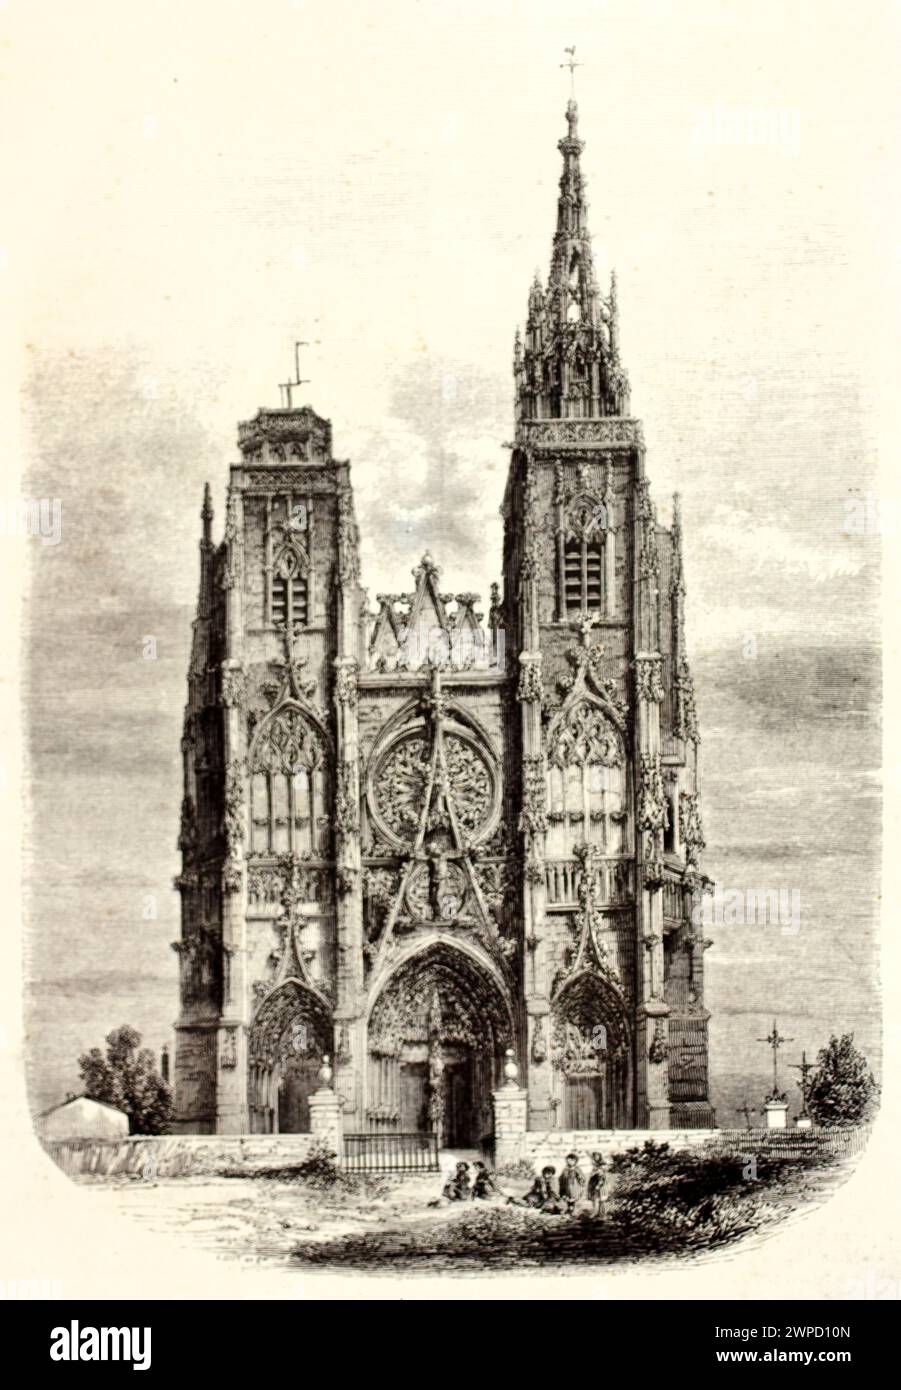 Alte gravierte Illustration von Notre-Dame de l’Epine, Matne, Frankreich. Erstellt von Best, veröffentlicht bei Magasin Pittoresque, Paris, 1852 Stockfoto